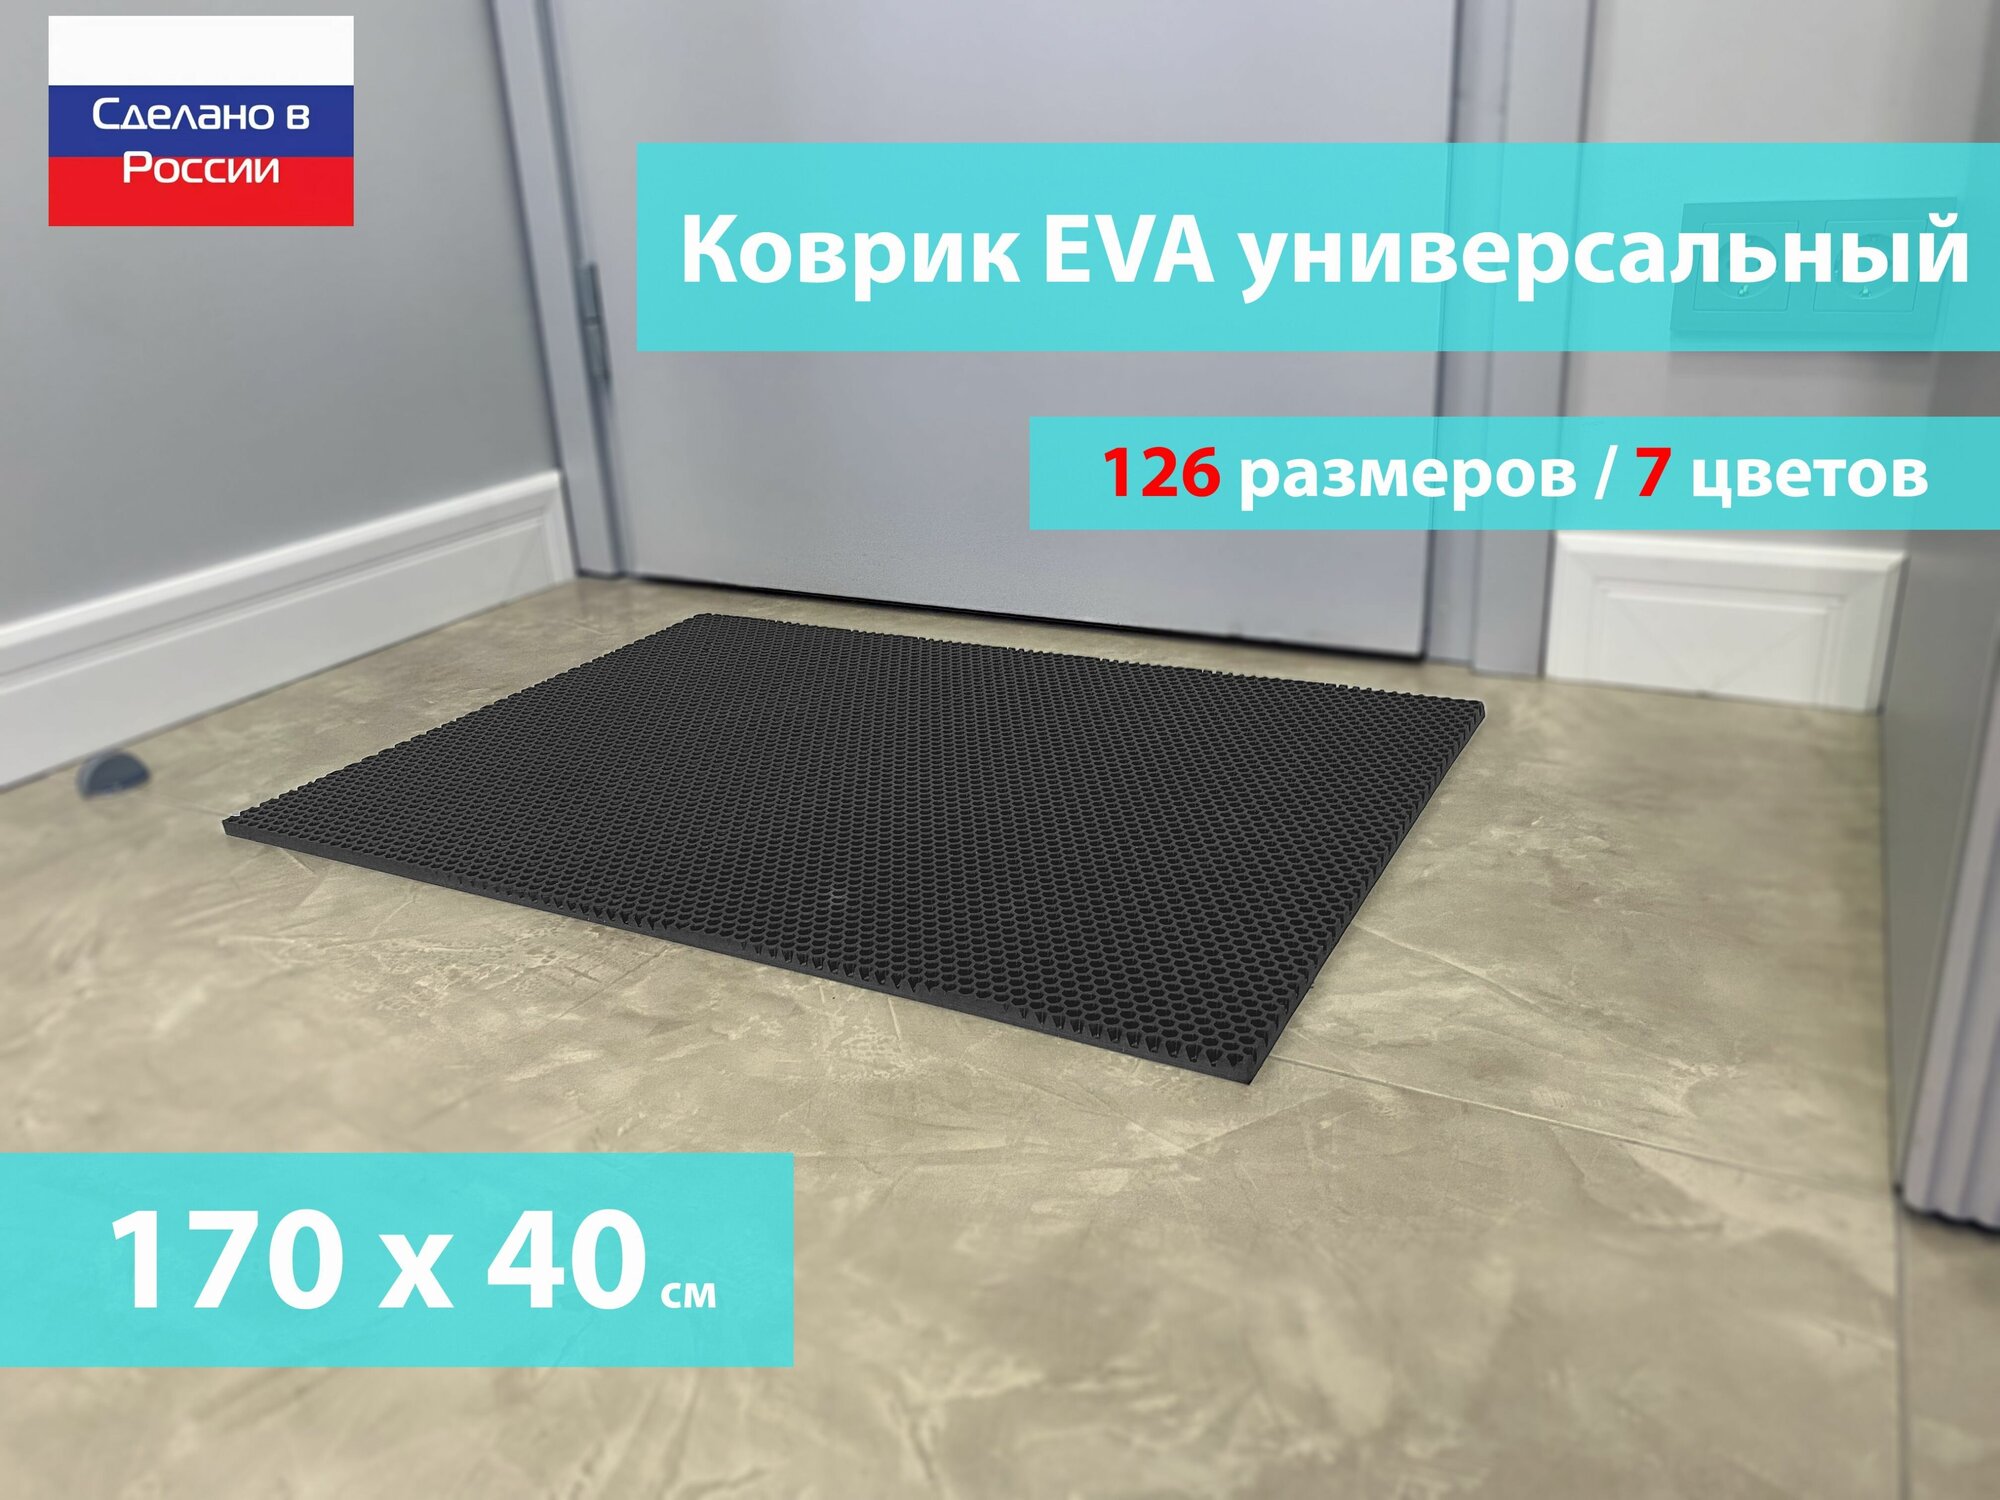 Коврик придверный EVA (ЕВА) в прихожую для обуви / Ковер ЭВА на пол перед дверью/ серый / размер 170 х 140 см